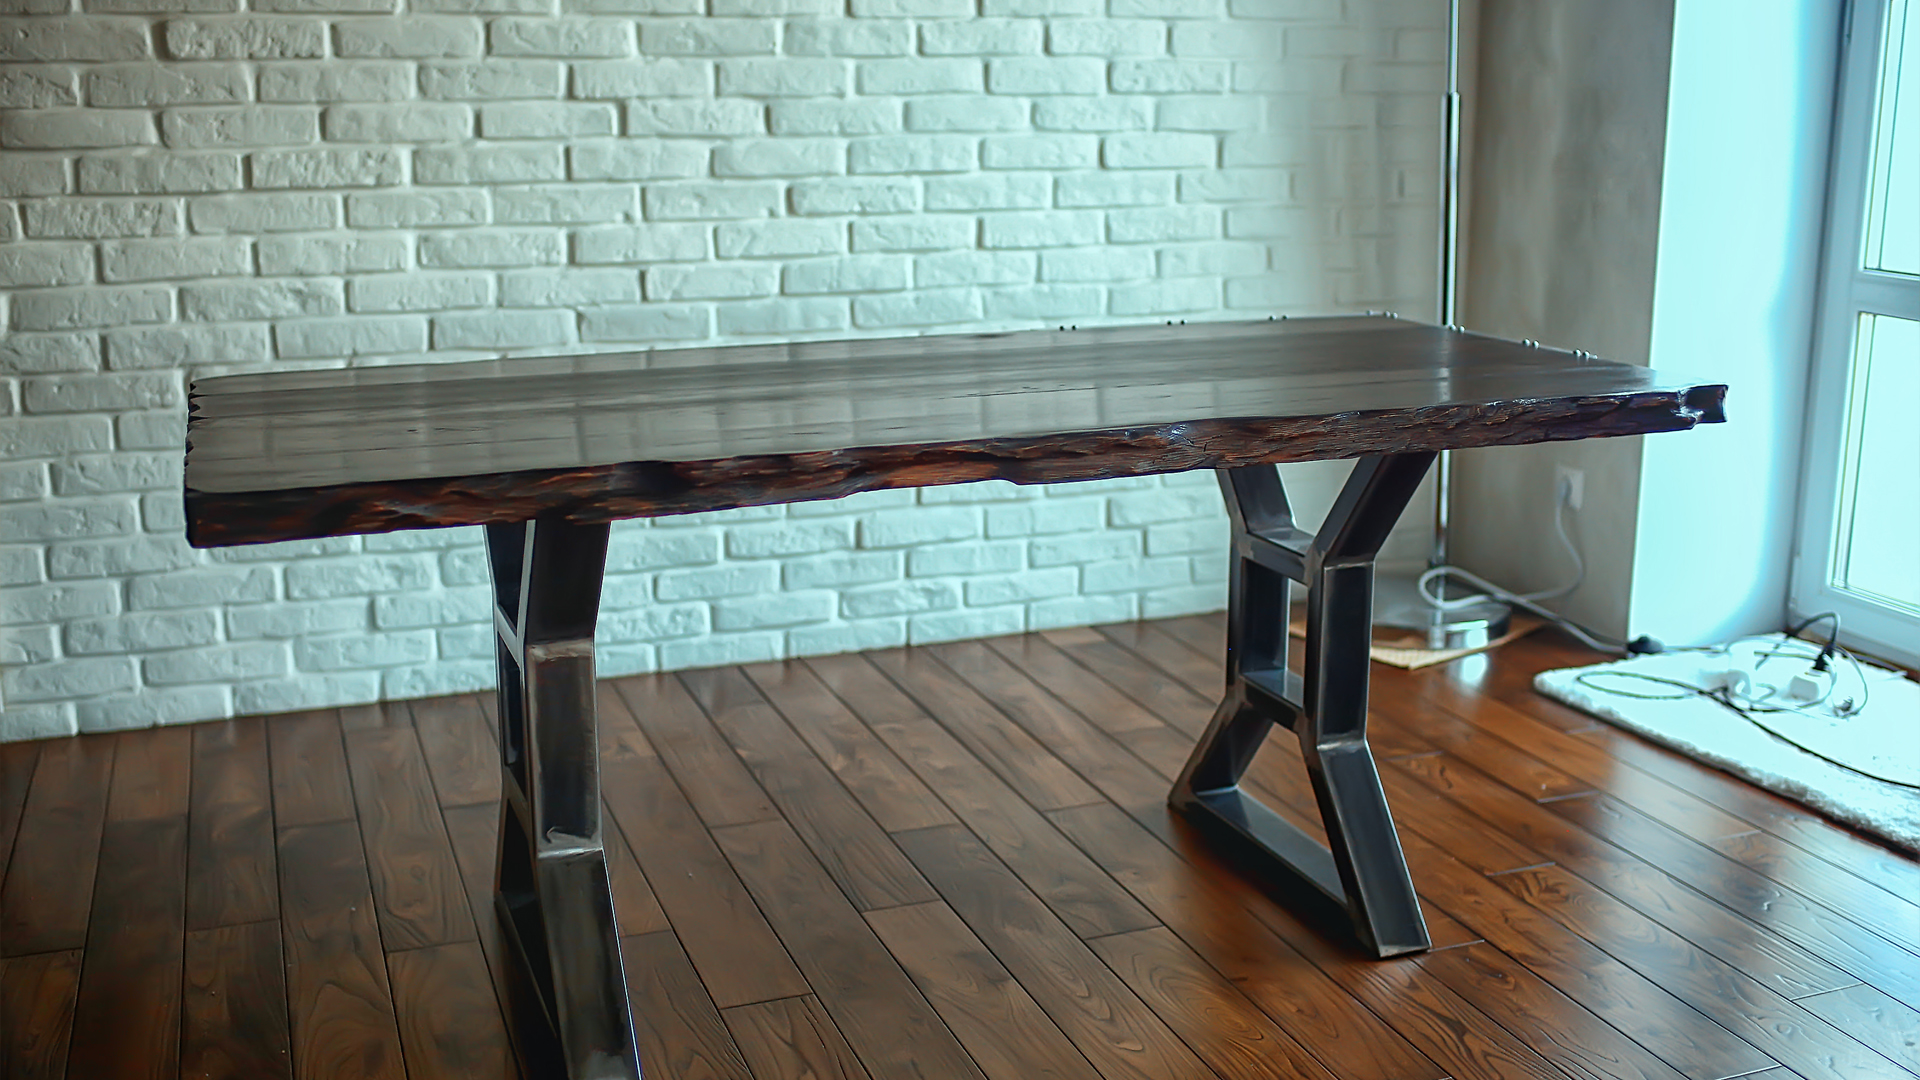 تفصيل الطاولات الخشبية والحديدية المناسبة لديكورات الغرف والصالونات والمكاتب، بجدوة عالية وموديلات مميزة.